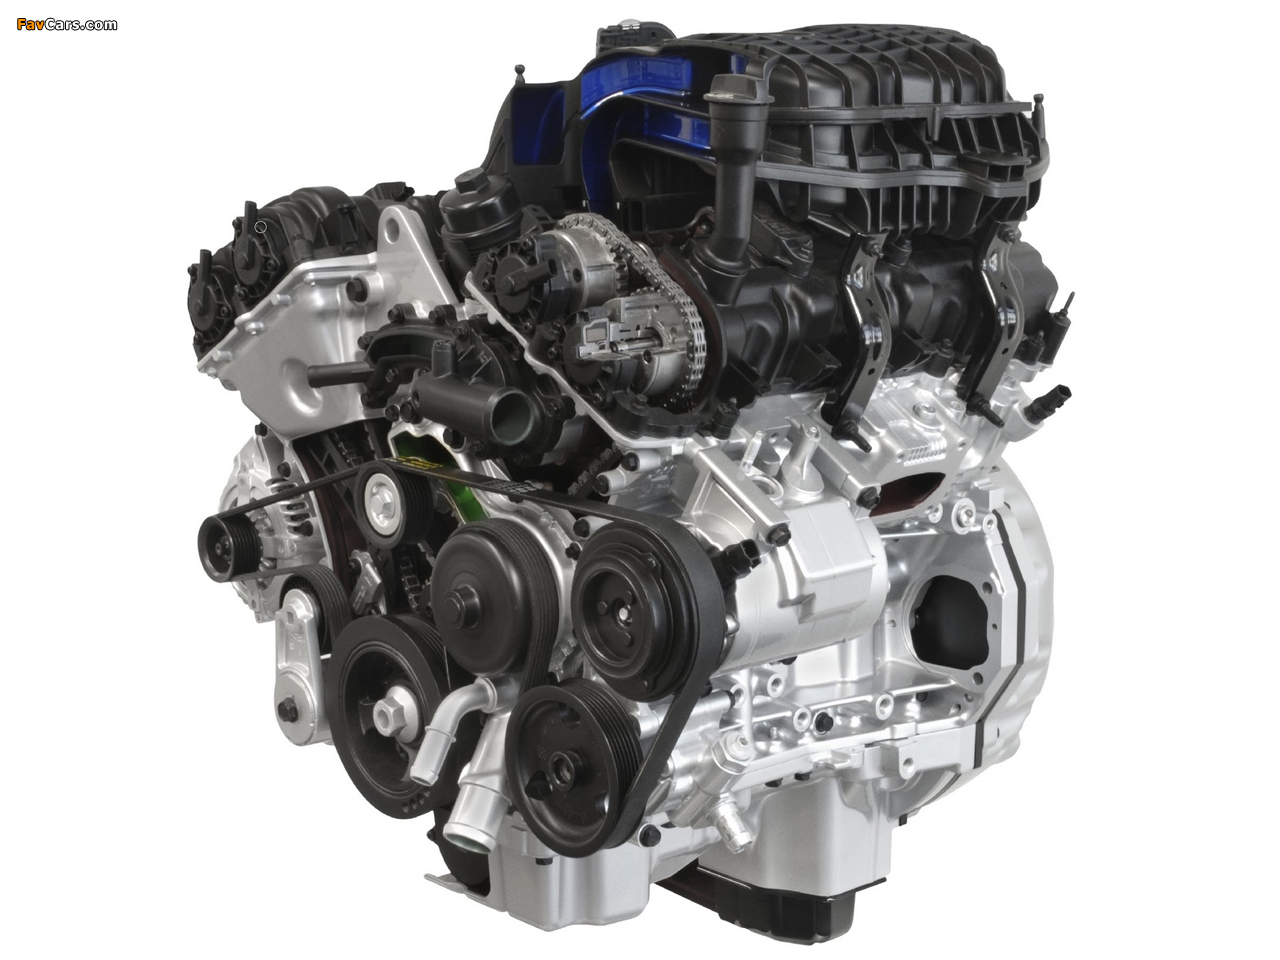 Images of Engines Chrysler Pentastar V6 3.6 (1280 x 960)